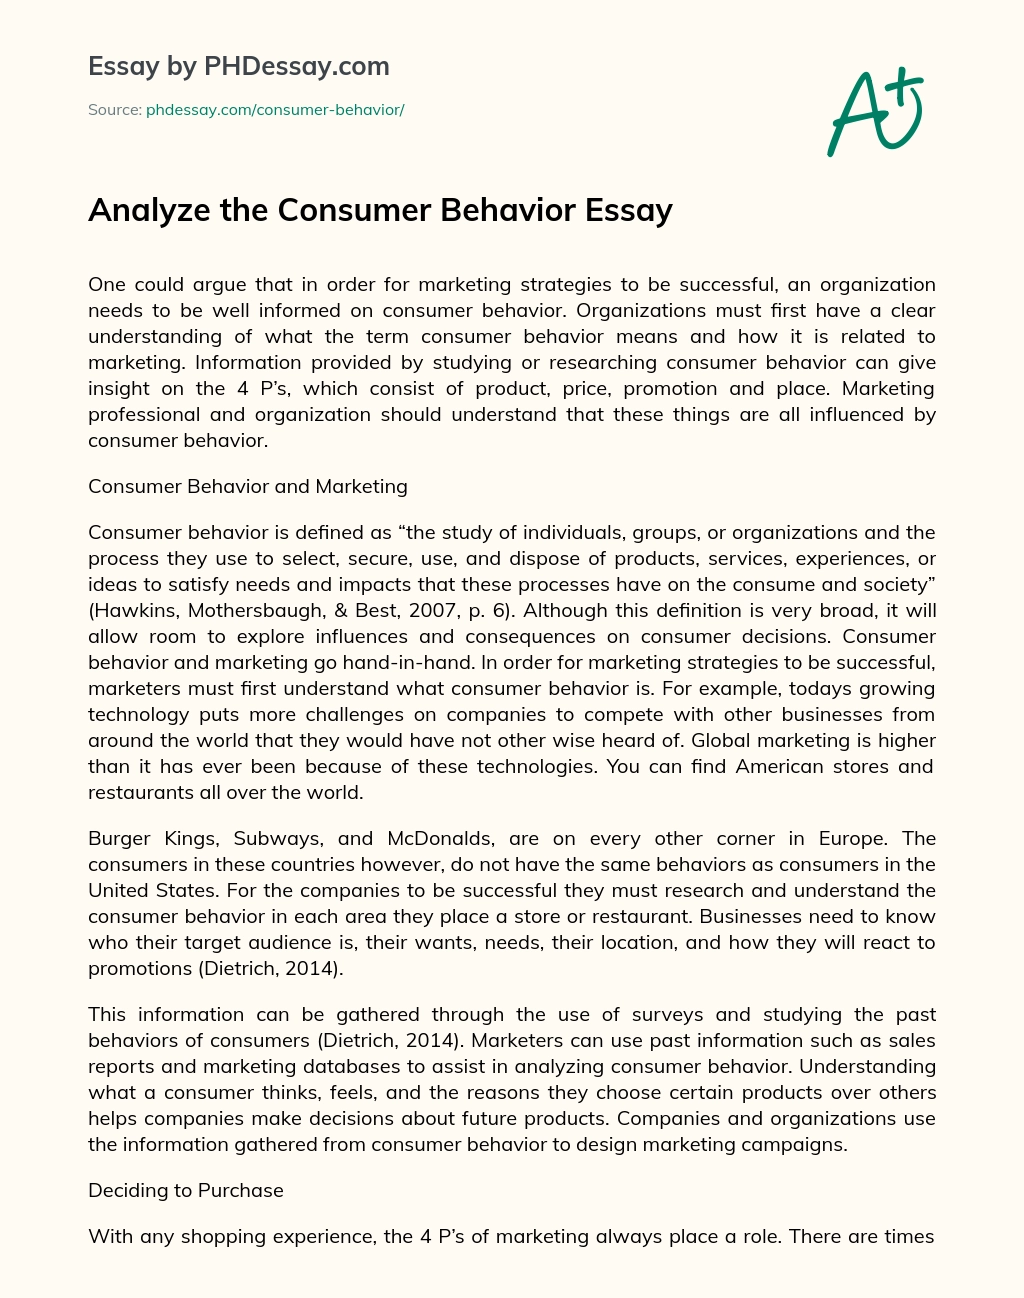 Analyze the Consumer Behavior Essay essay